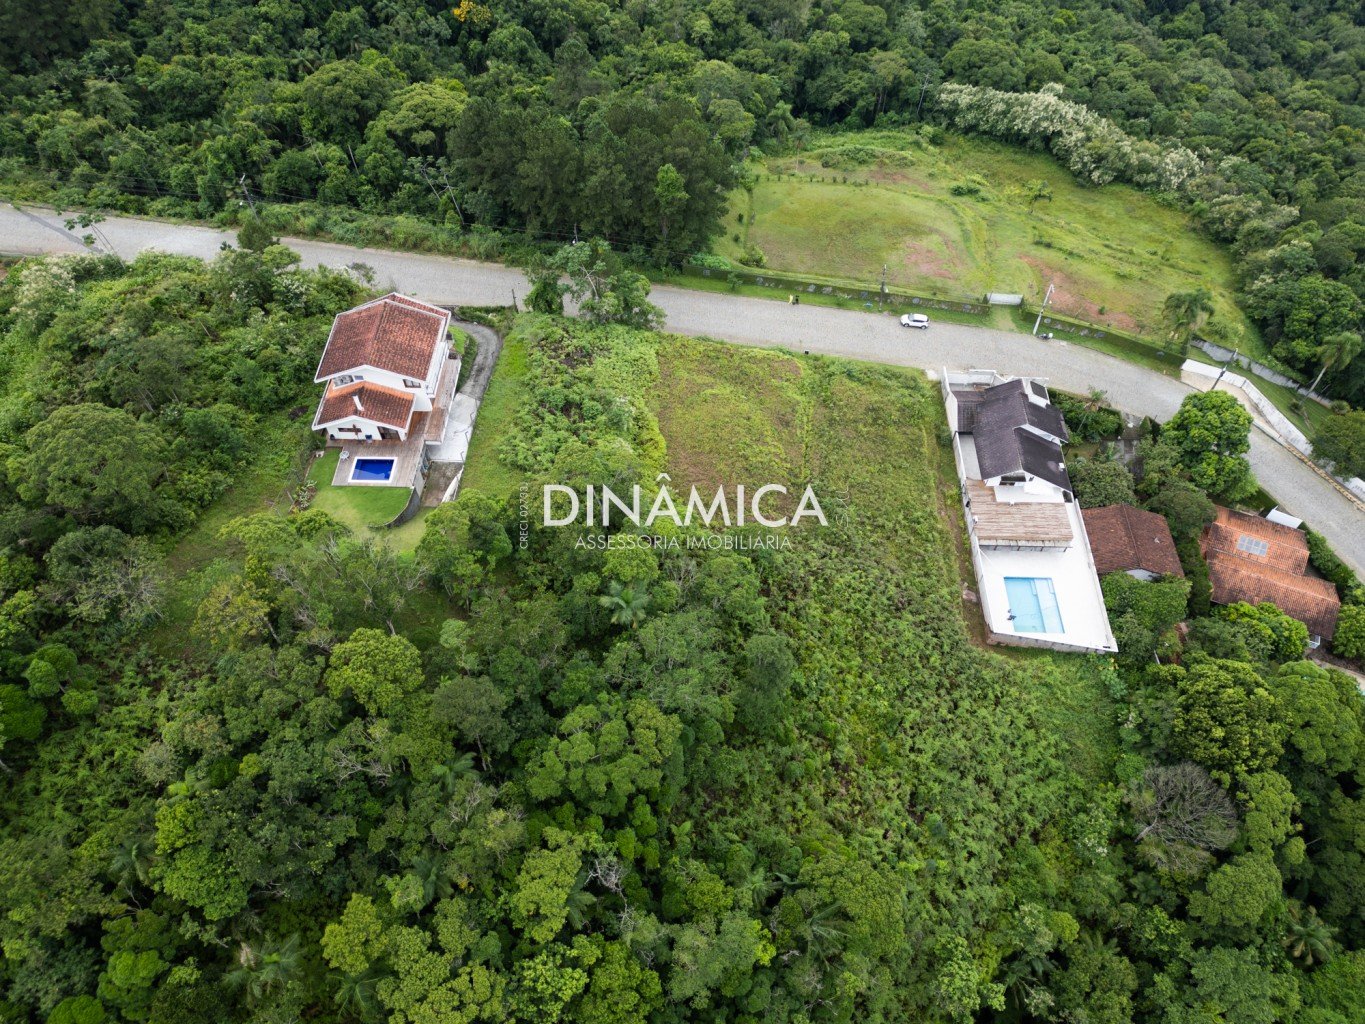 terreno a venda, terreno a venda em Blumenau, terreno a venda no bairro Ponta Aguda, imobiliária em Blumenau, dinamica sul